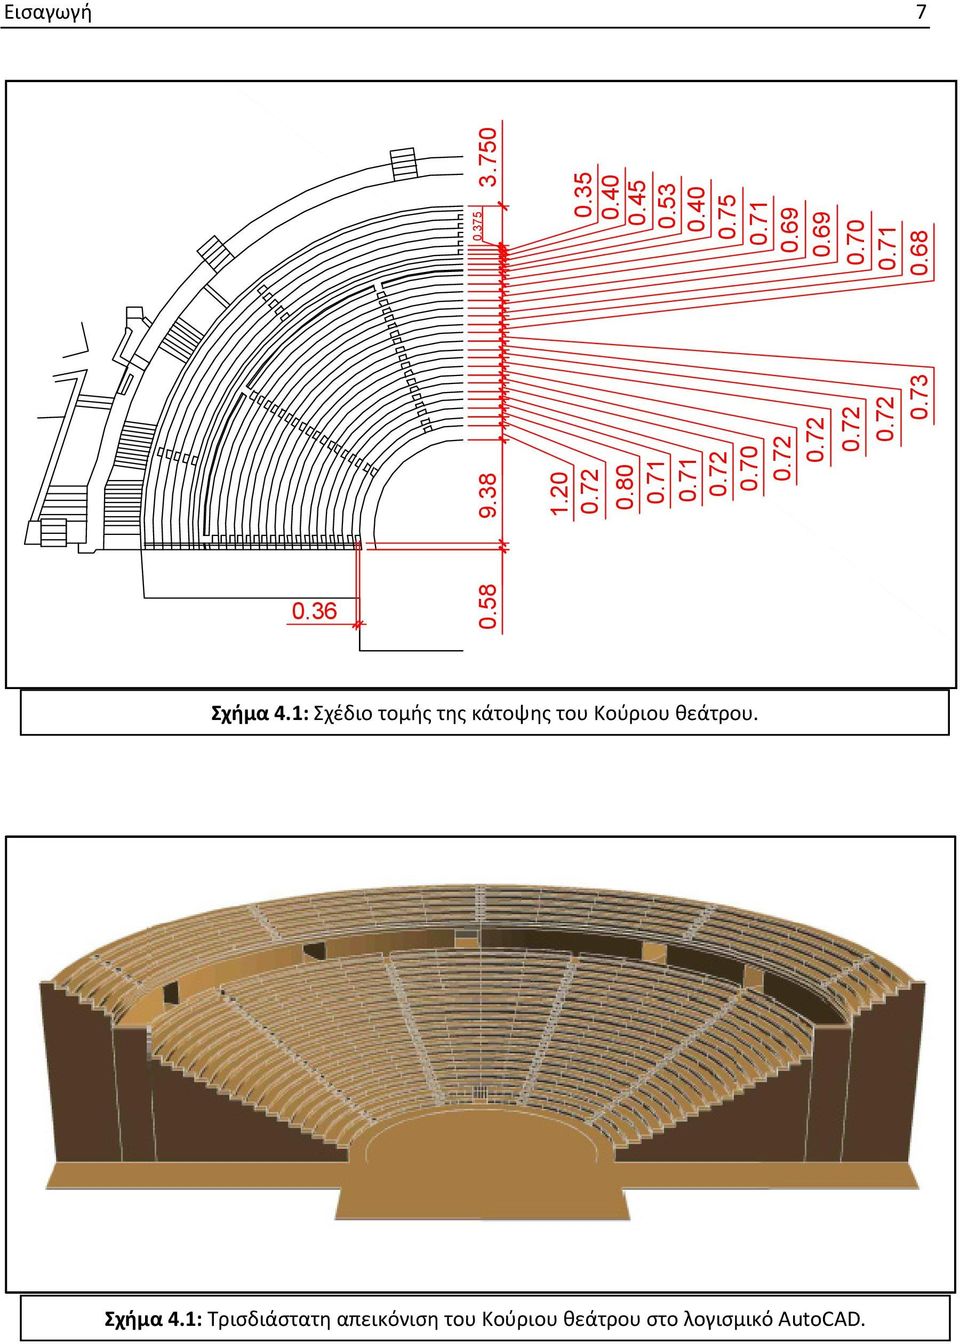 1: Σχέδιο τομής της κάτοψης του Κούριου θεάτρου. Σχήμα 4.